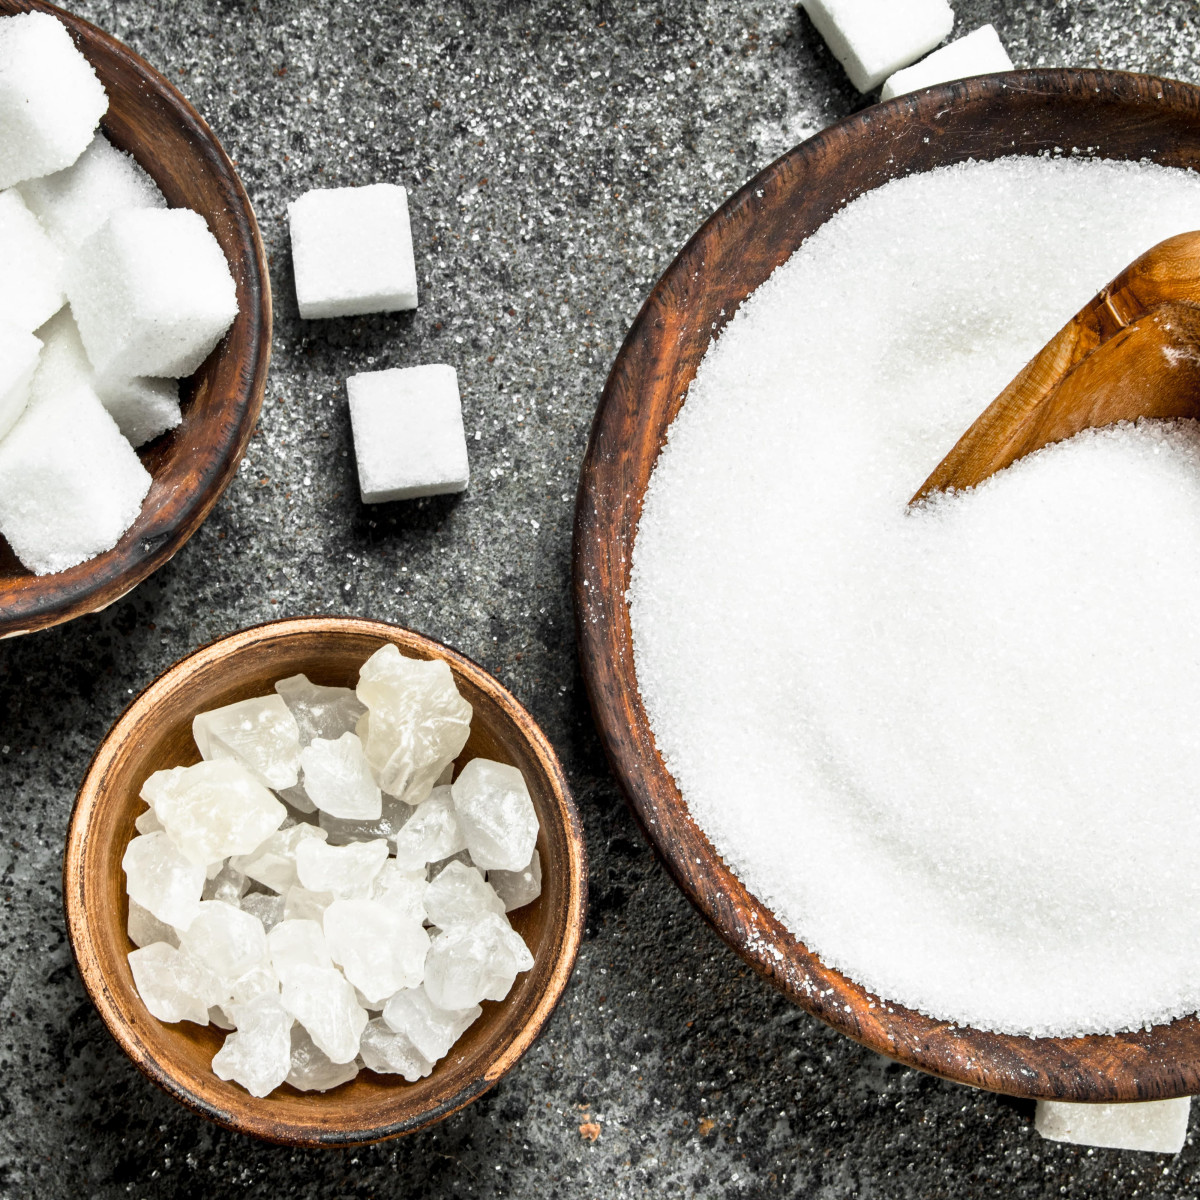 Czym zastąpić biały cukier?